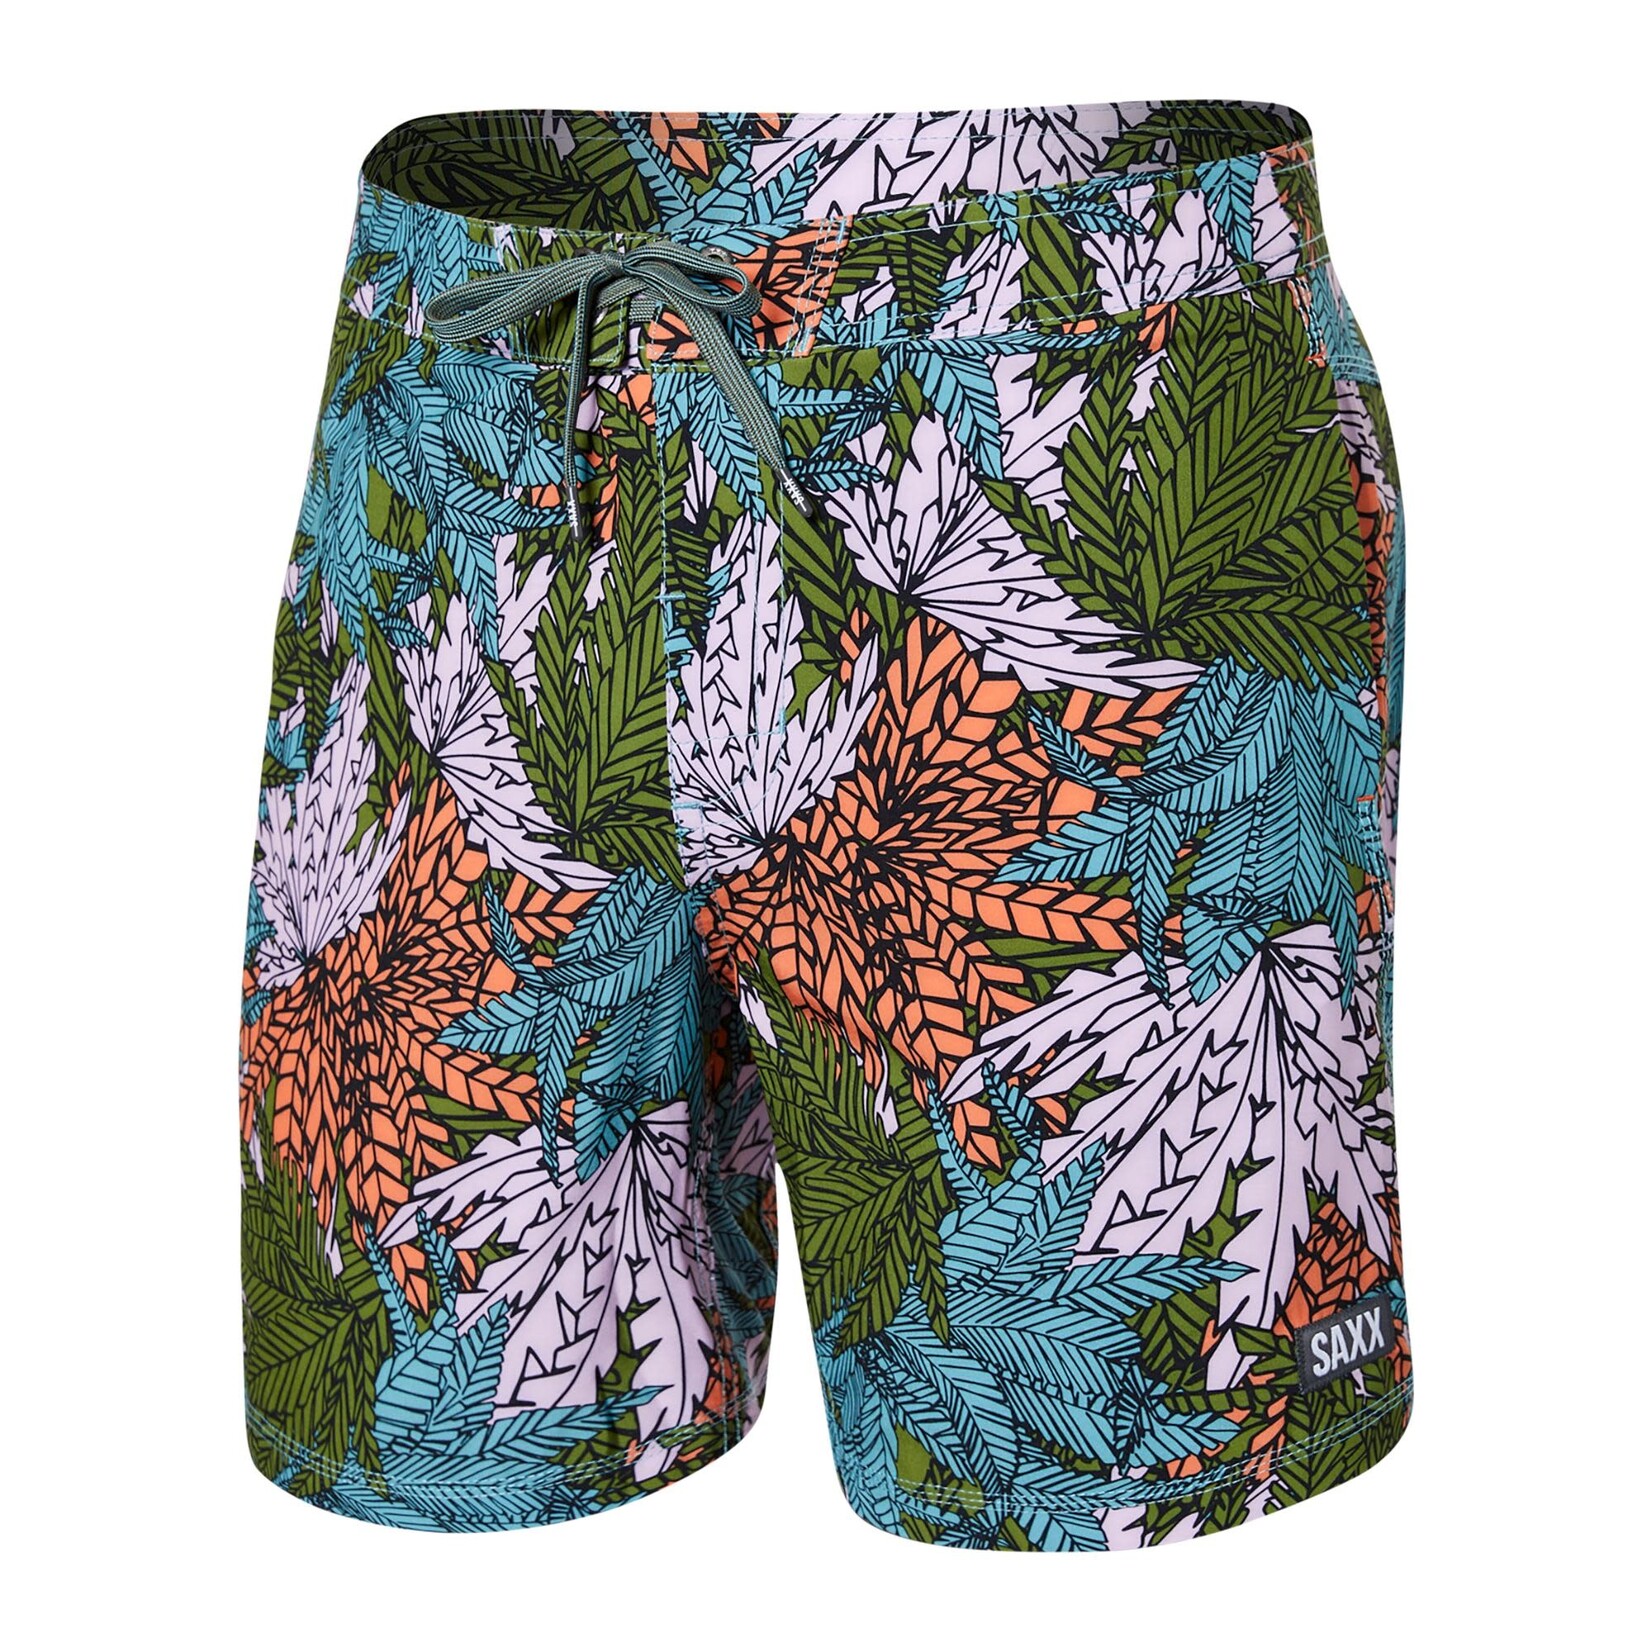 SAXX BETAWAVE BOARDSHORT Swim Shorts 17" / Sub Tropic- Multi